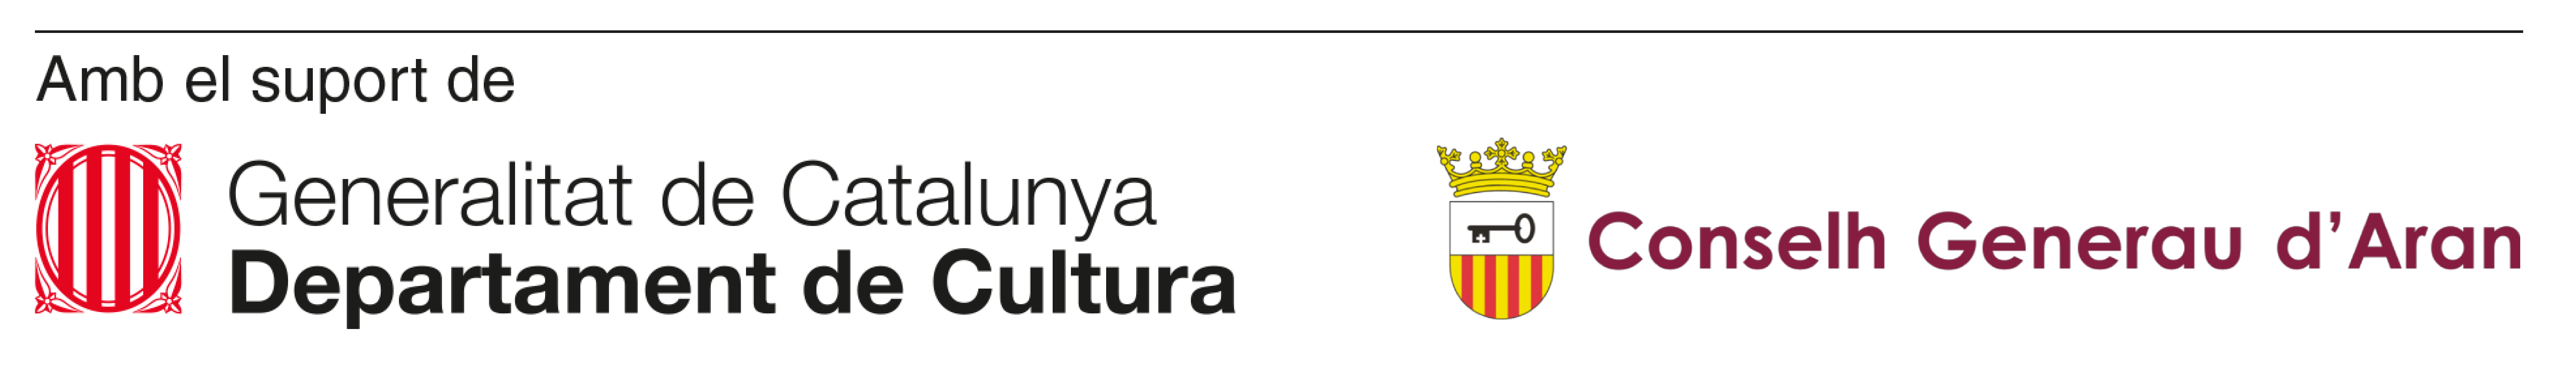 amb suport de Departament de Cultura de Generalitat de Catalunya i Conselh Generau d'Aran